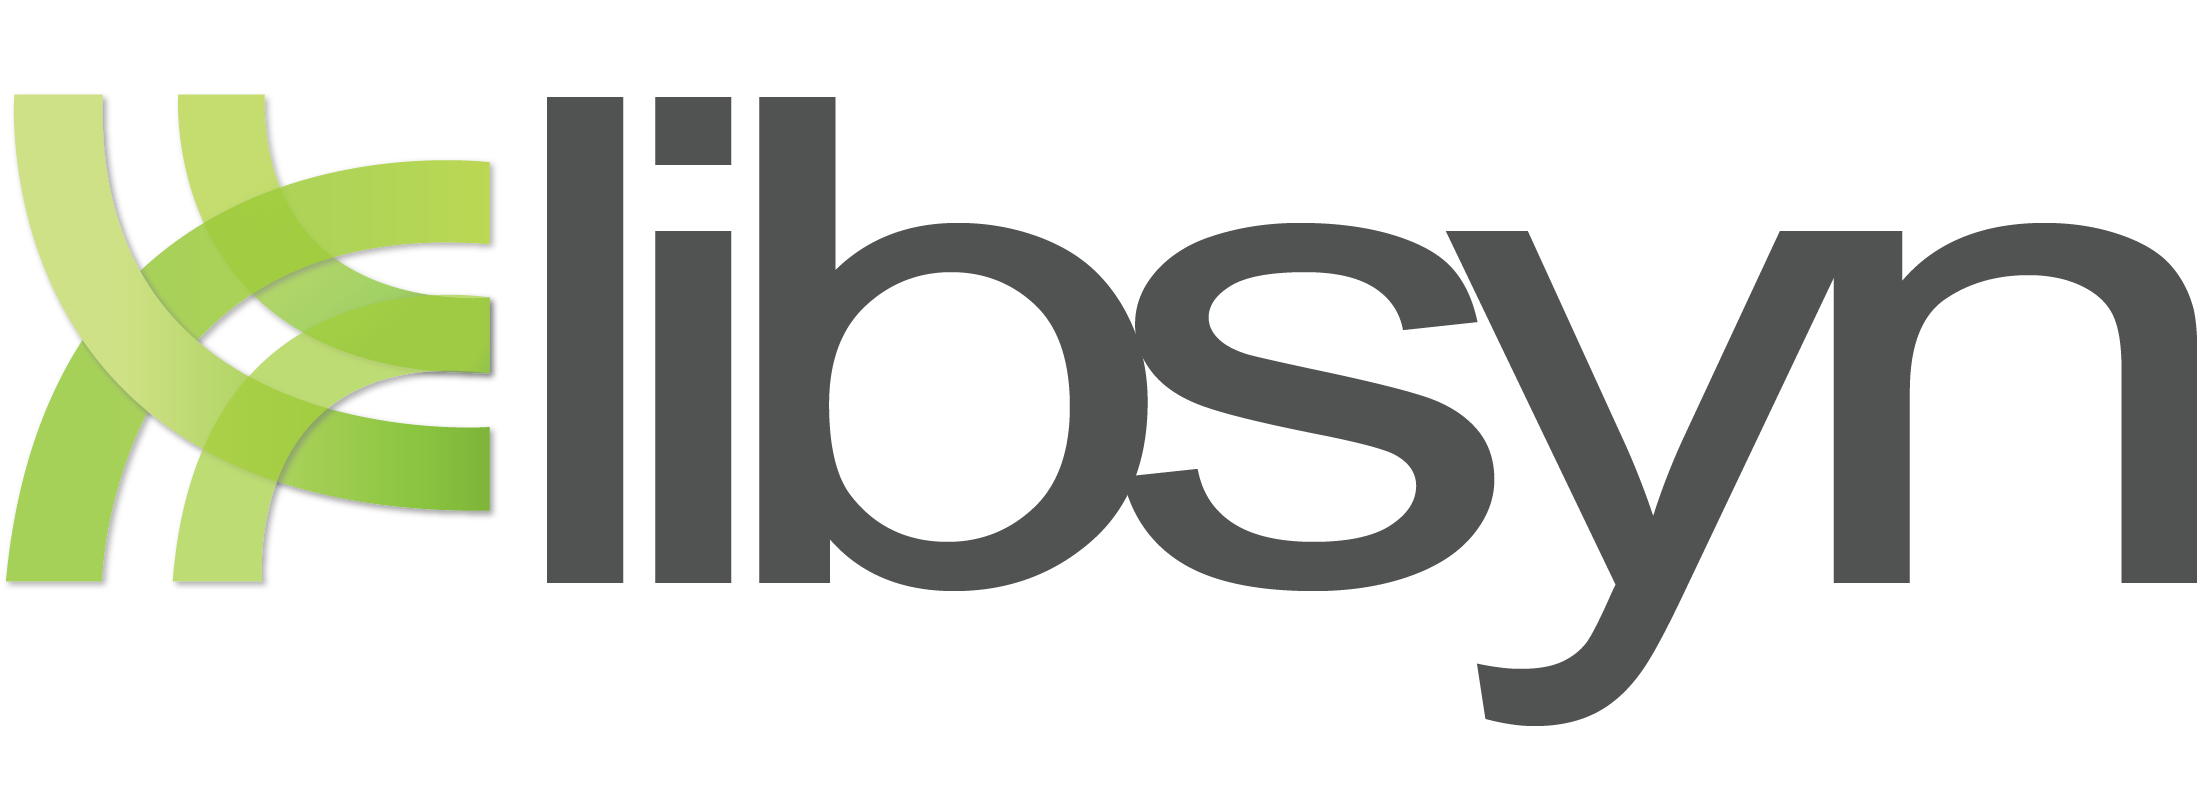 Libsyn logo